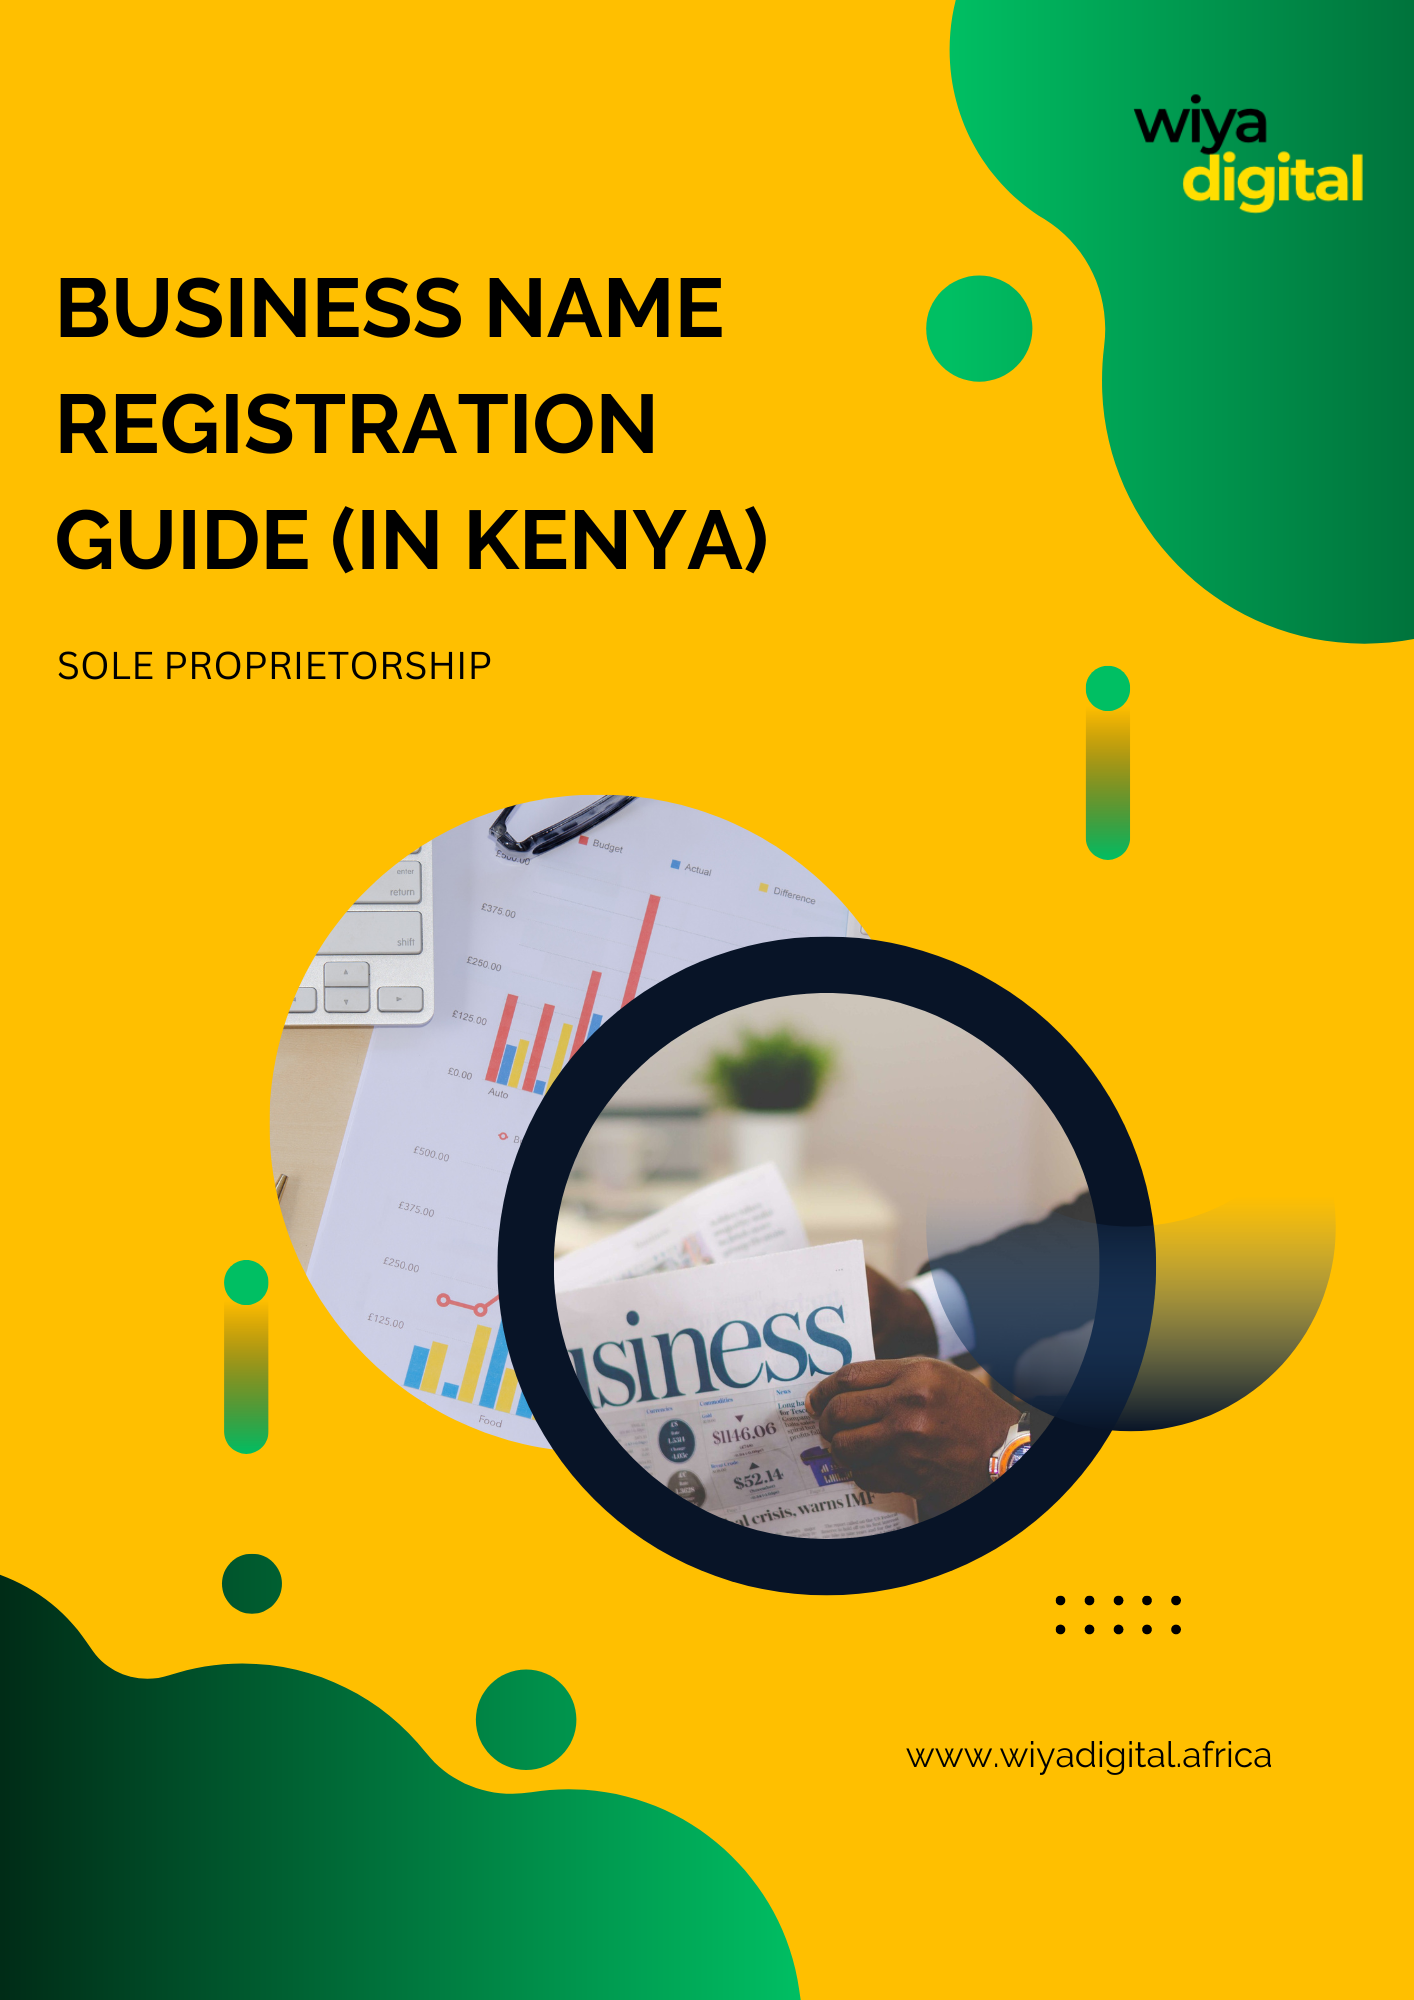 Business Name Registration Guide - Sole Proprietorship in Kenya